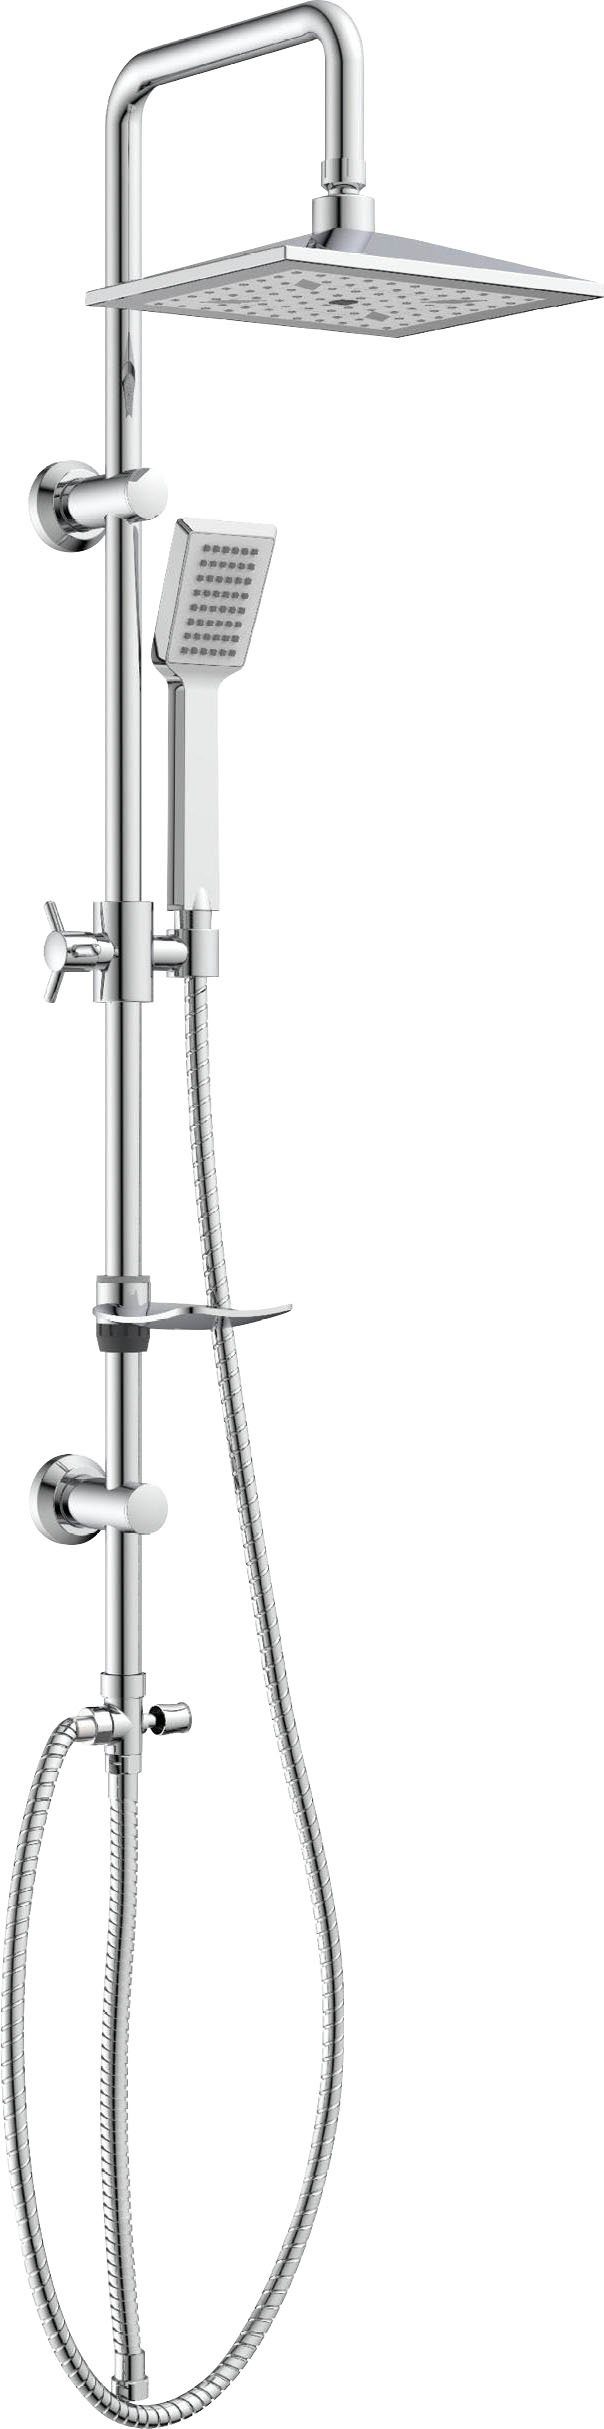 Eisl Duschsystem »EASY COOL«, Höhe 95 cm, Regendusche ohne Armatur,  Duschsystem mit Seifenschale, Duschbrause